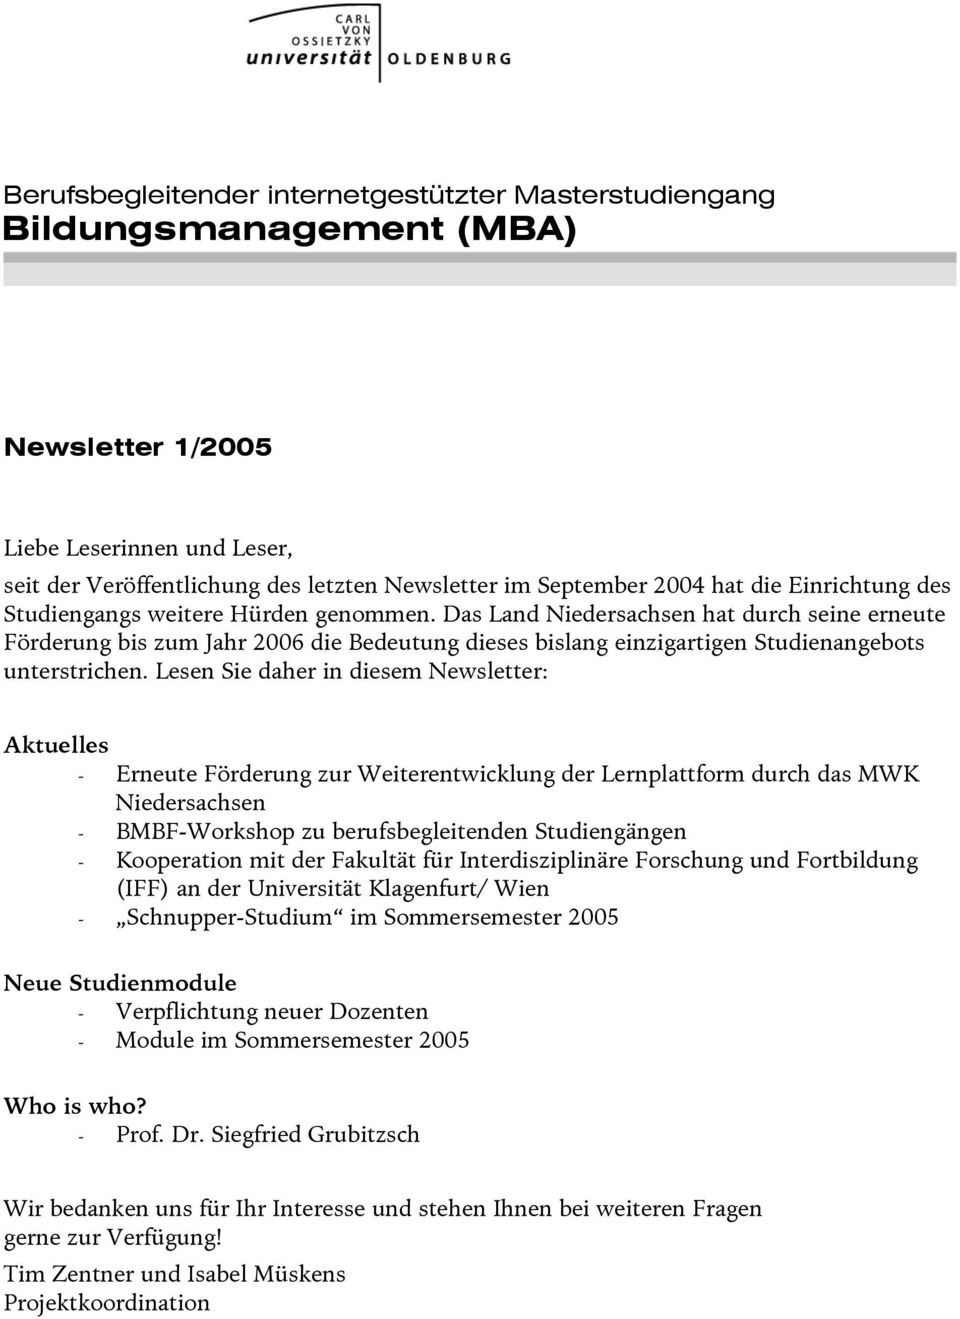 Das Land Niedersachsen hat durch seine erneute Förderung bis zum Jahr 2006 die Bedeutung dieses bislang einzigartigen Studienangebots unterstrichen.